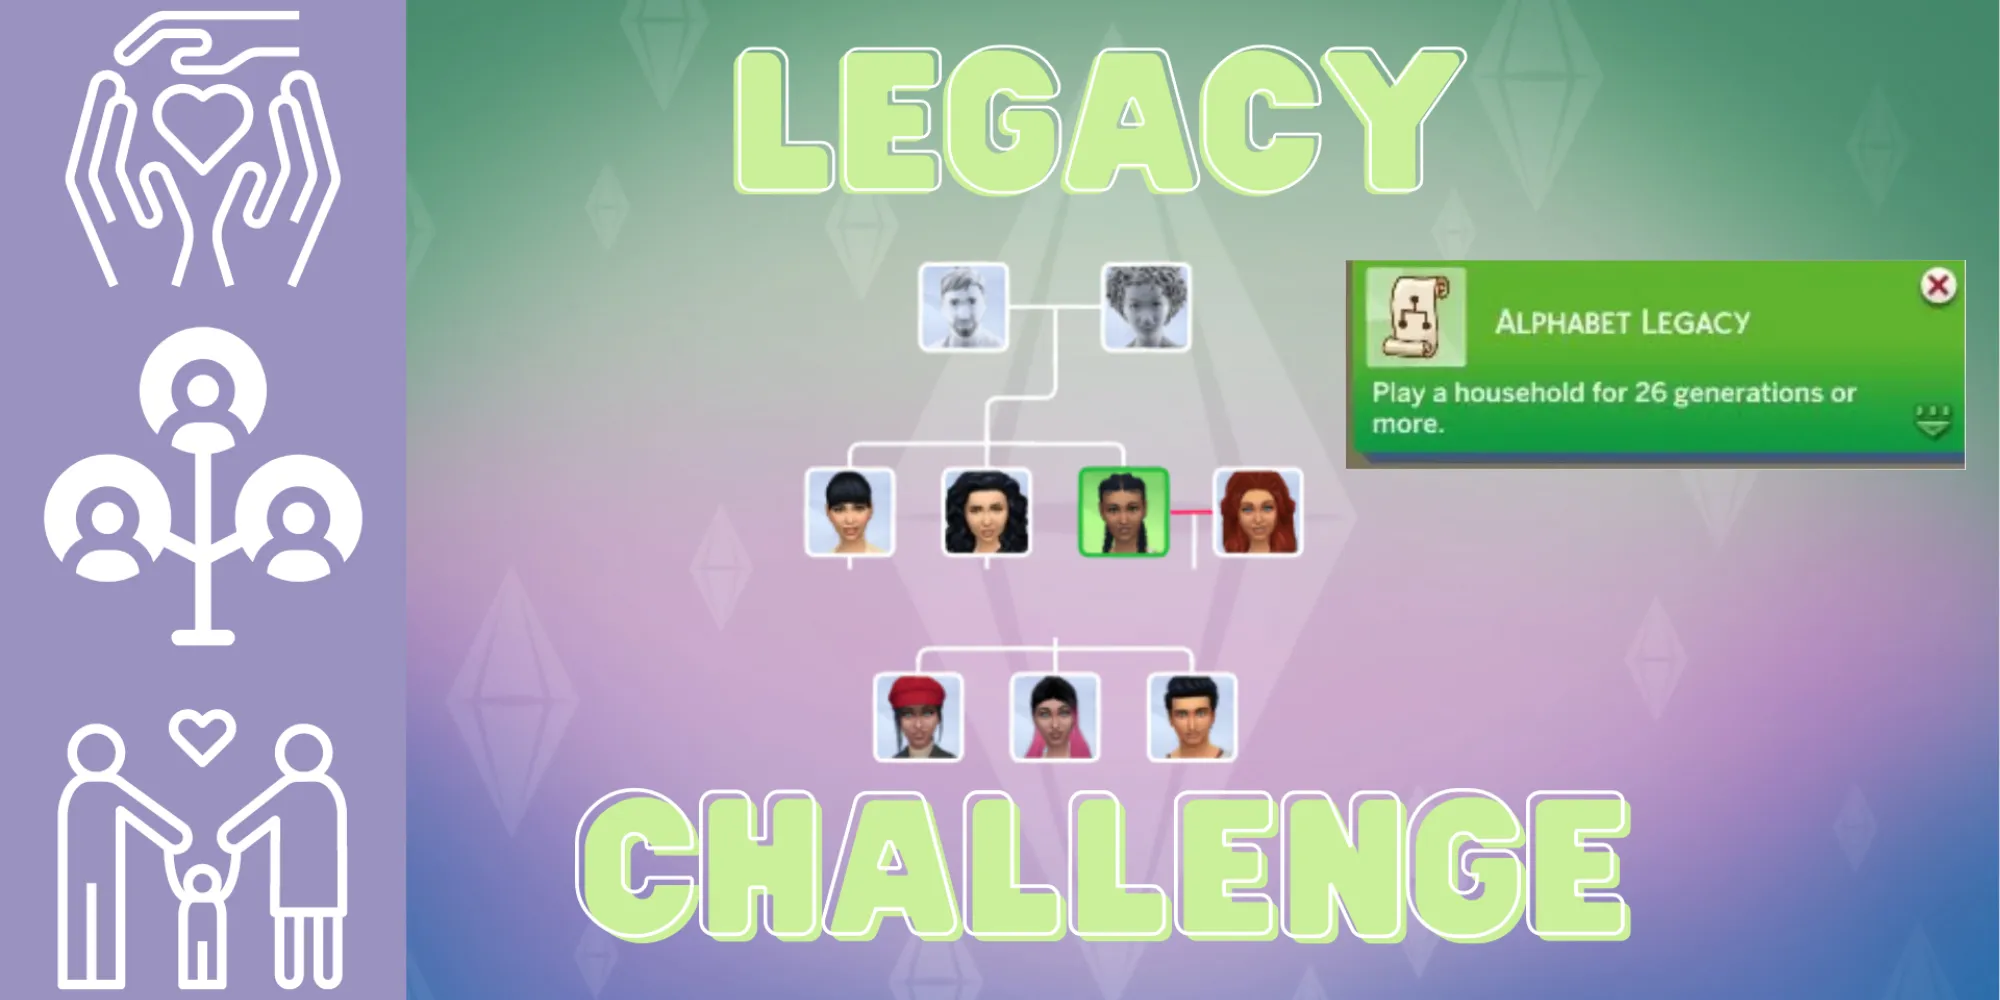 Un arbre généalogique des Sims 4 en relation avec le Défi de l'Héritage de l'Alphabet